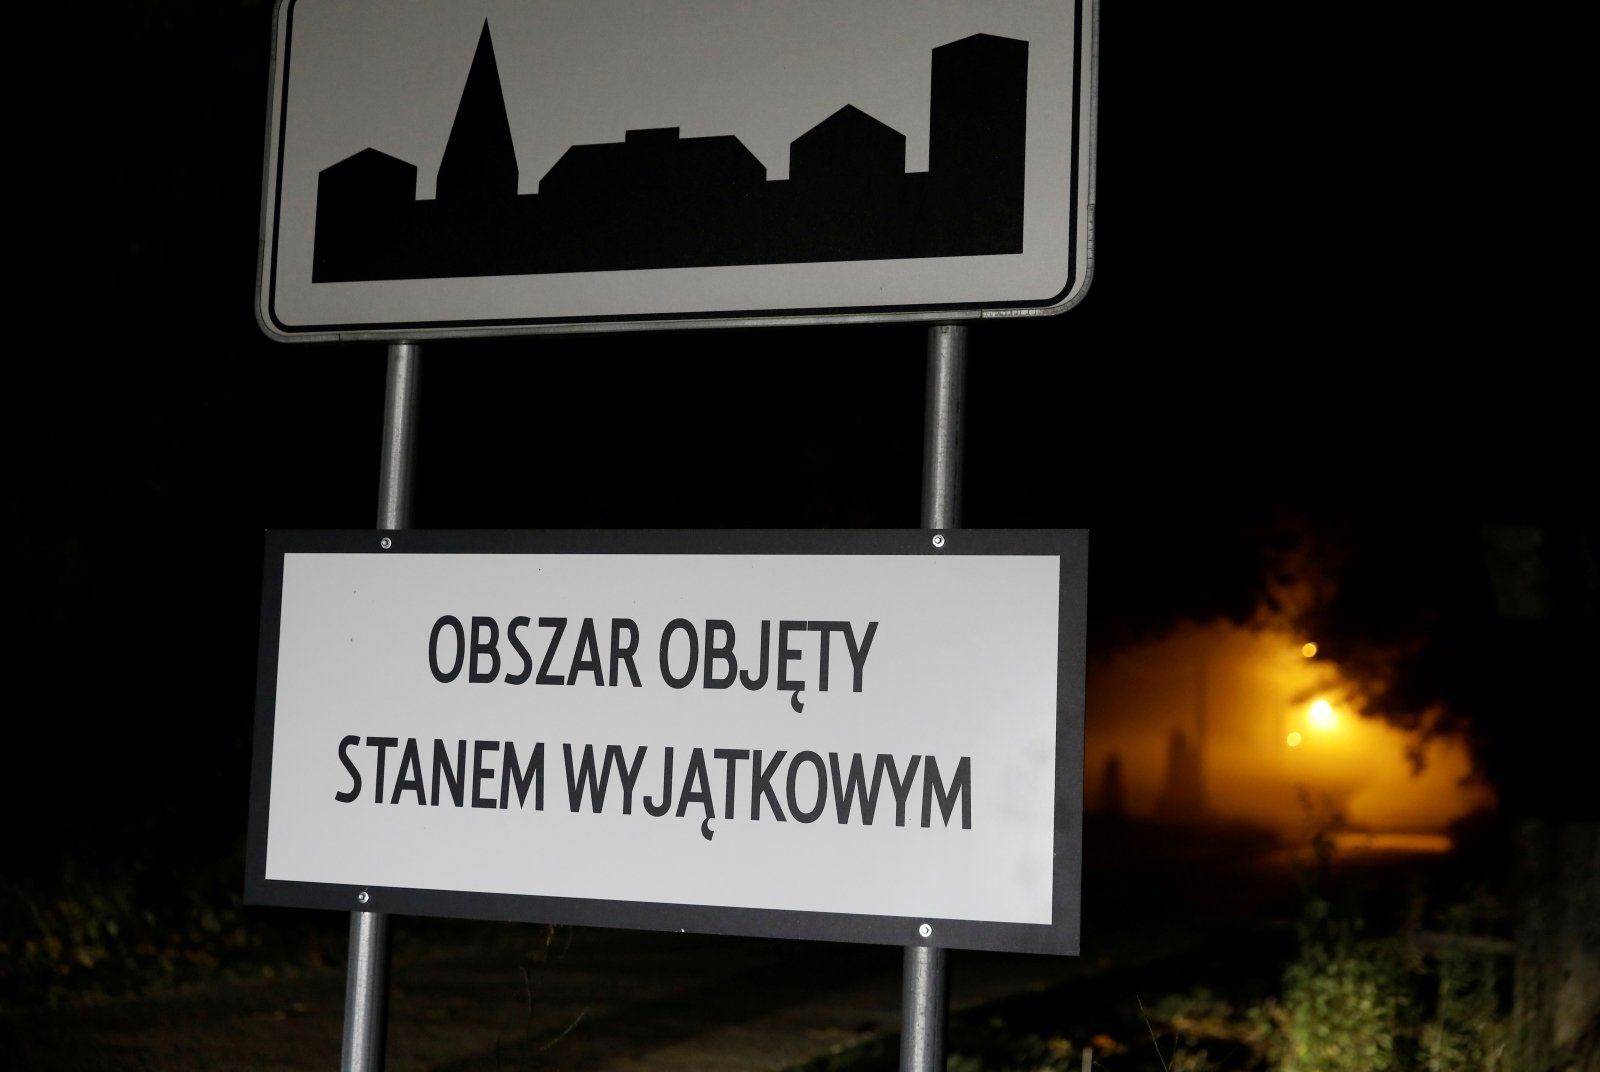 Warszawa: białoruscy żołnierze próbują zastrzelić polskich żołnierzy